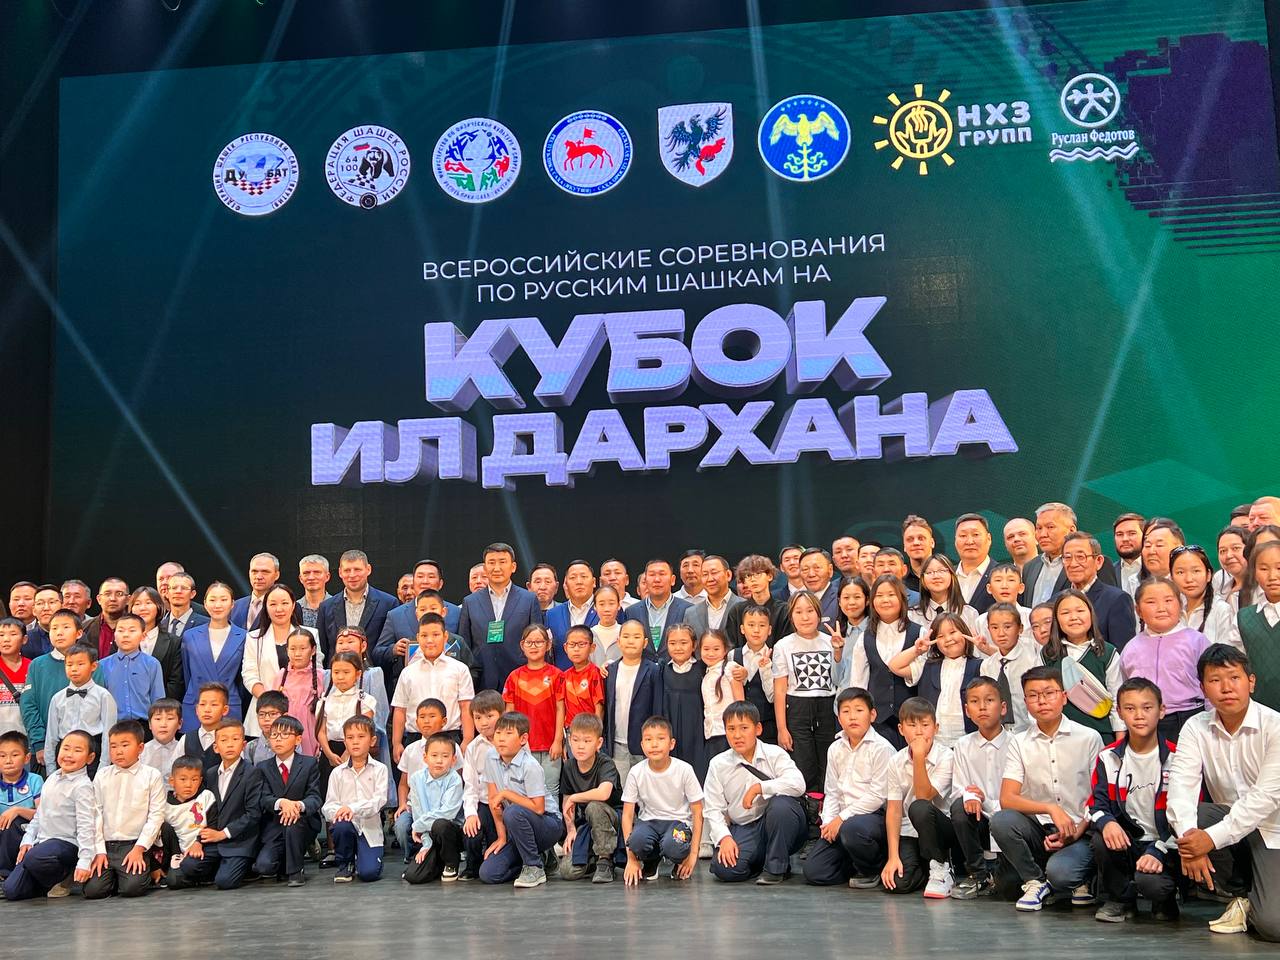 Соревнования по русским шашкам на кубок главы Якутии стартовали в Якутске